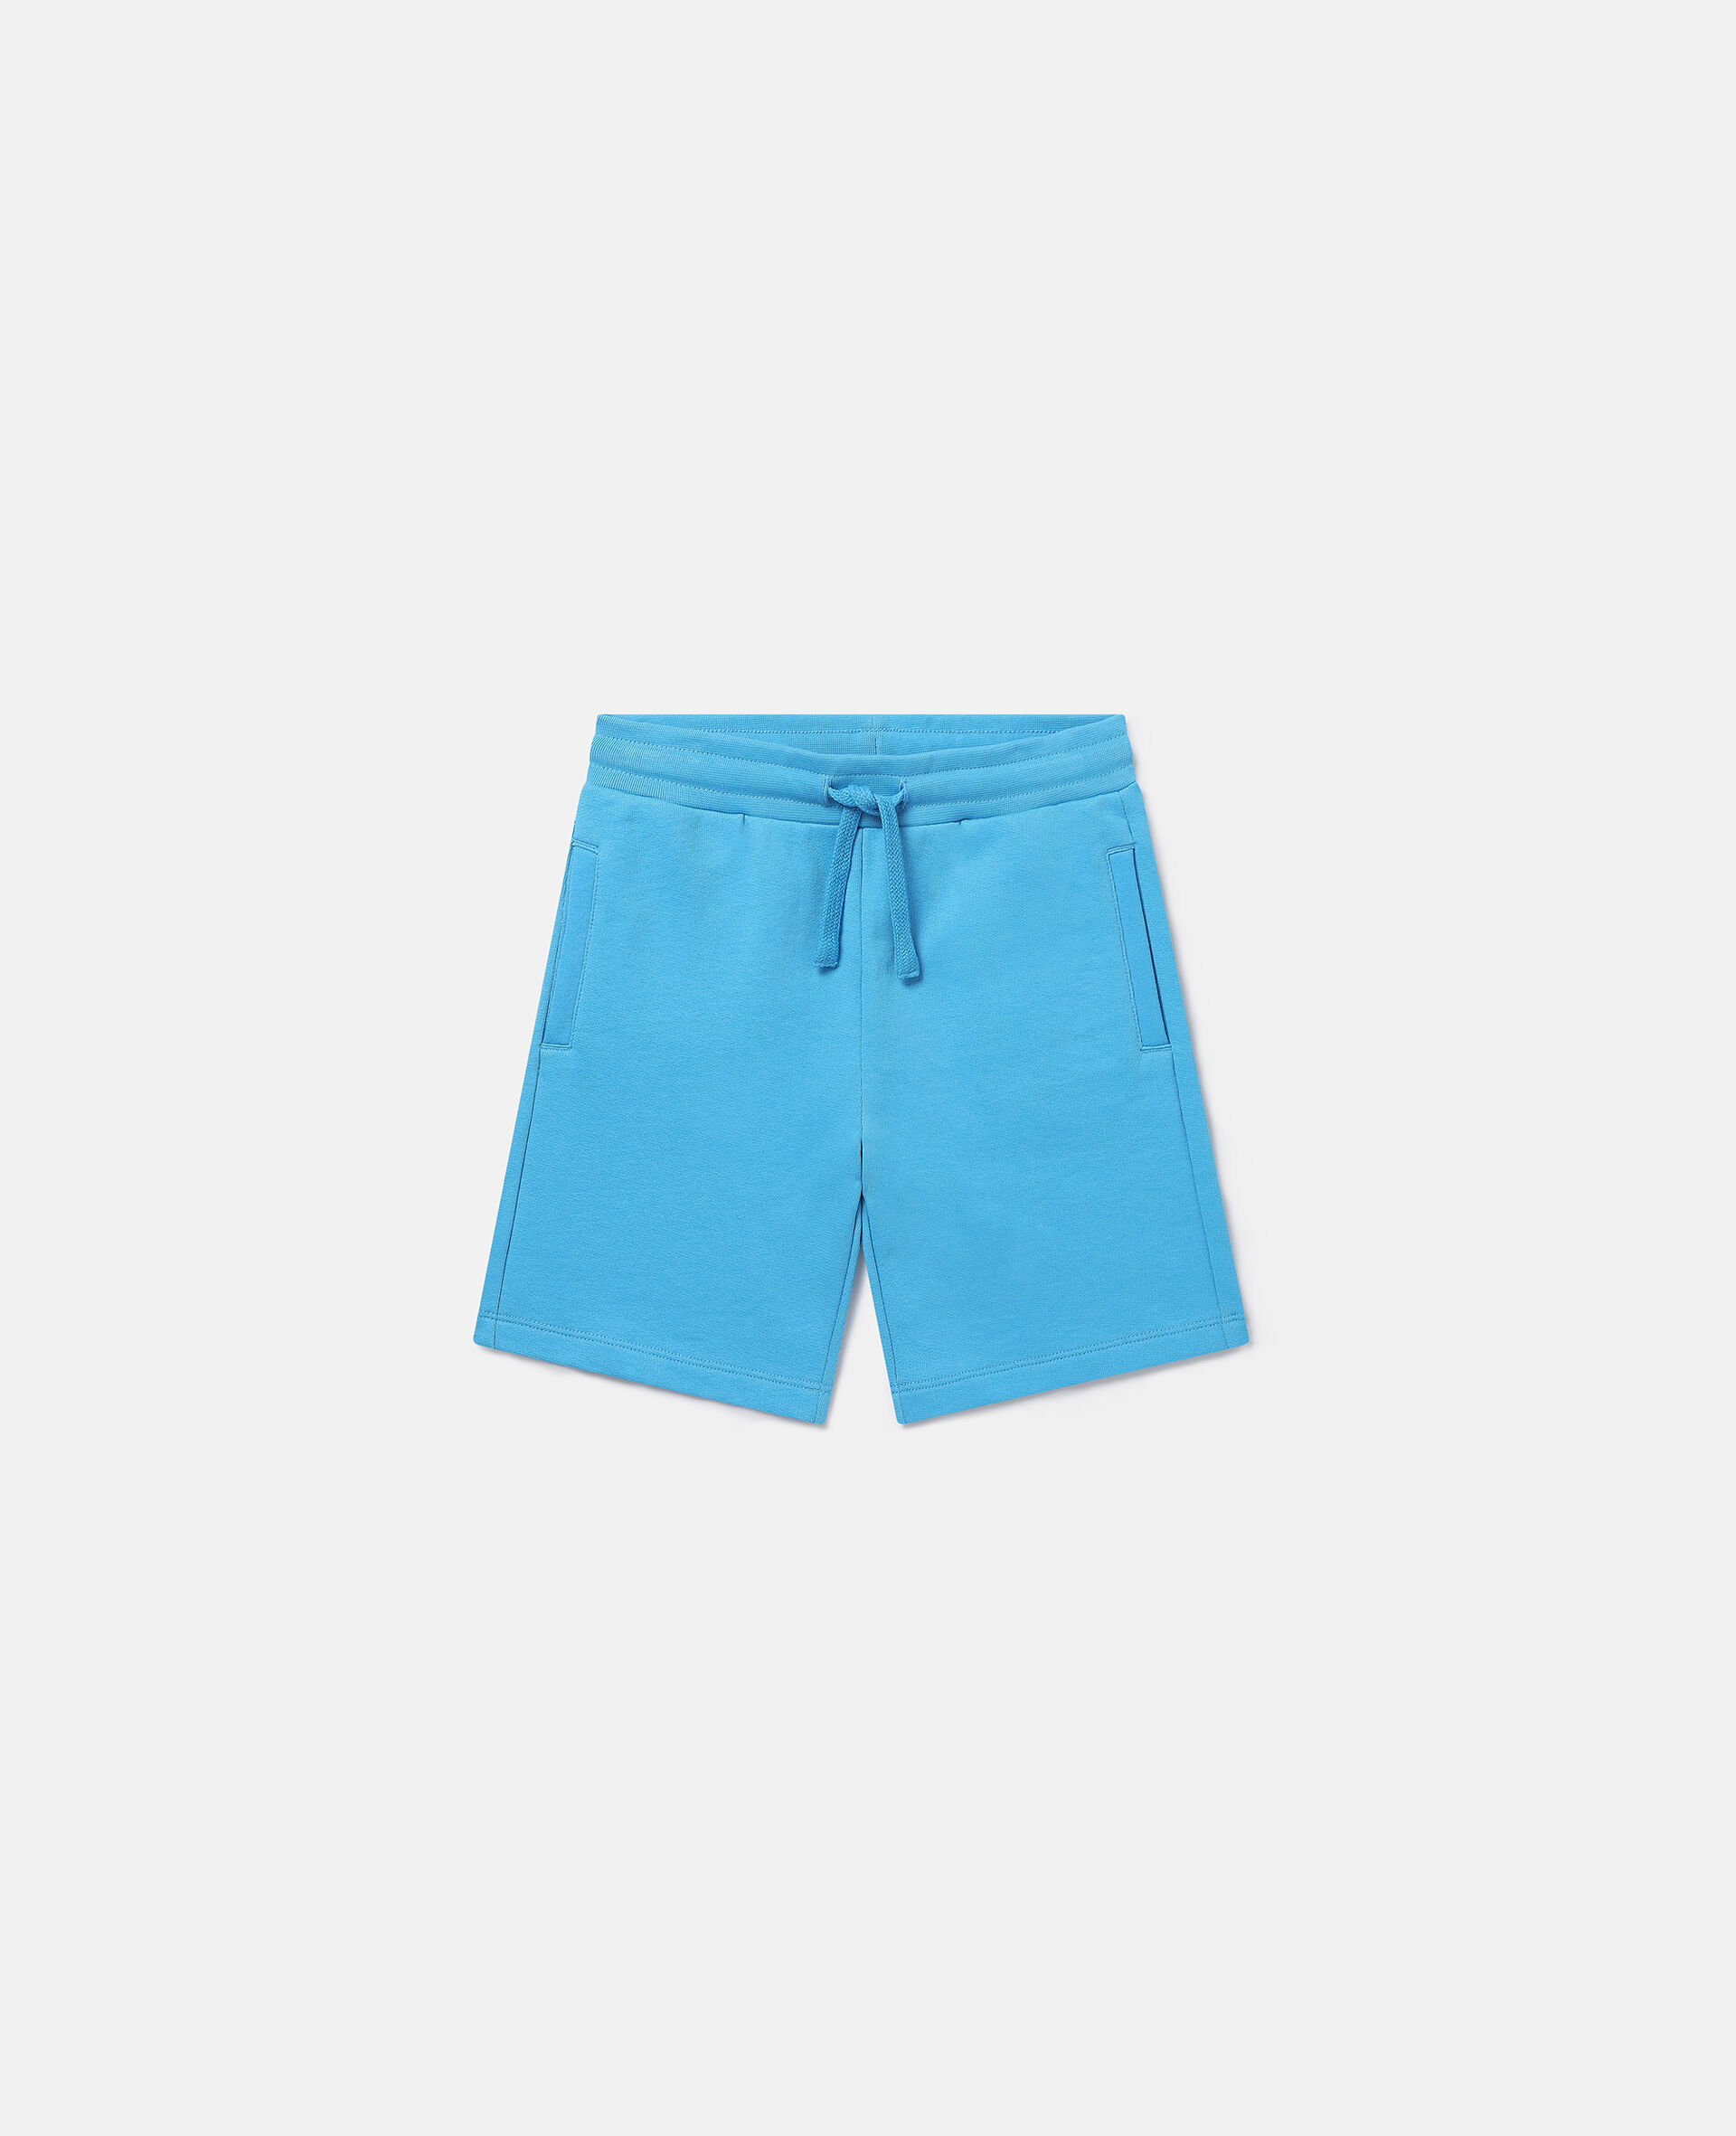 Drawstring Shorts-ブルー-medium